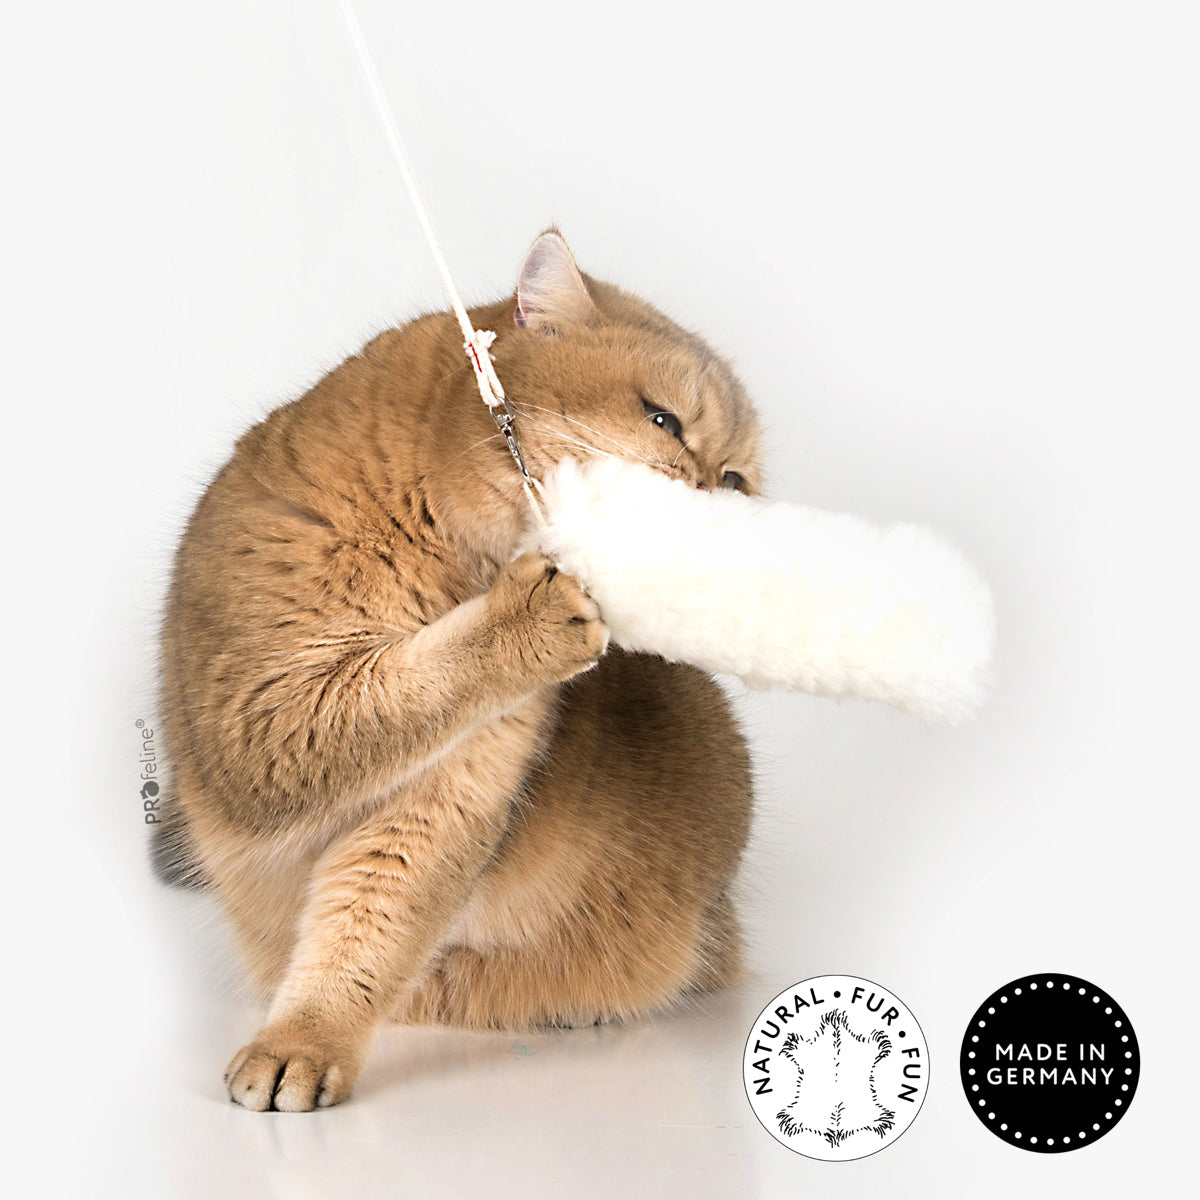 Profeline Merino Fur Cat Toy | at Made Moggie